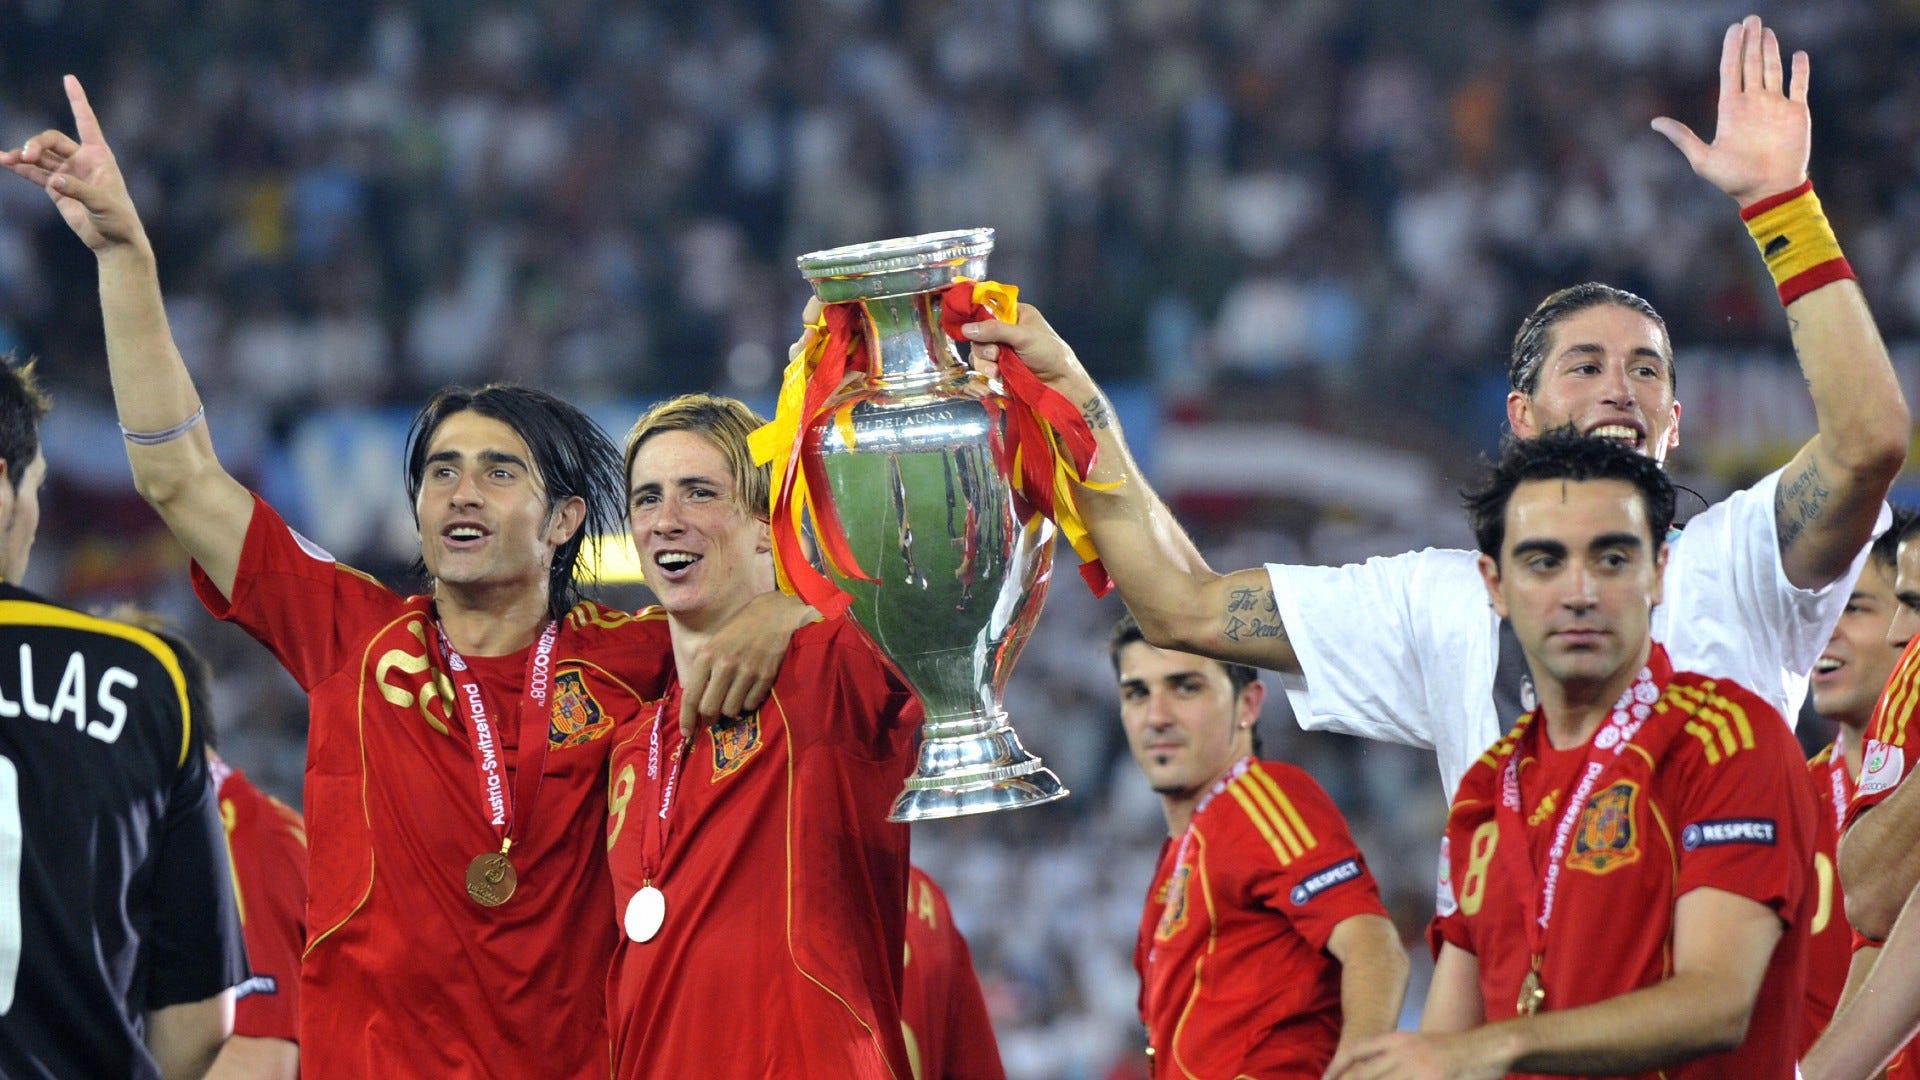 España - Eurocopa 2008